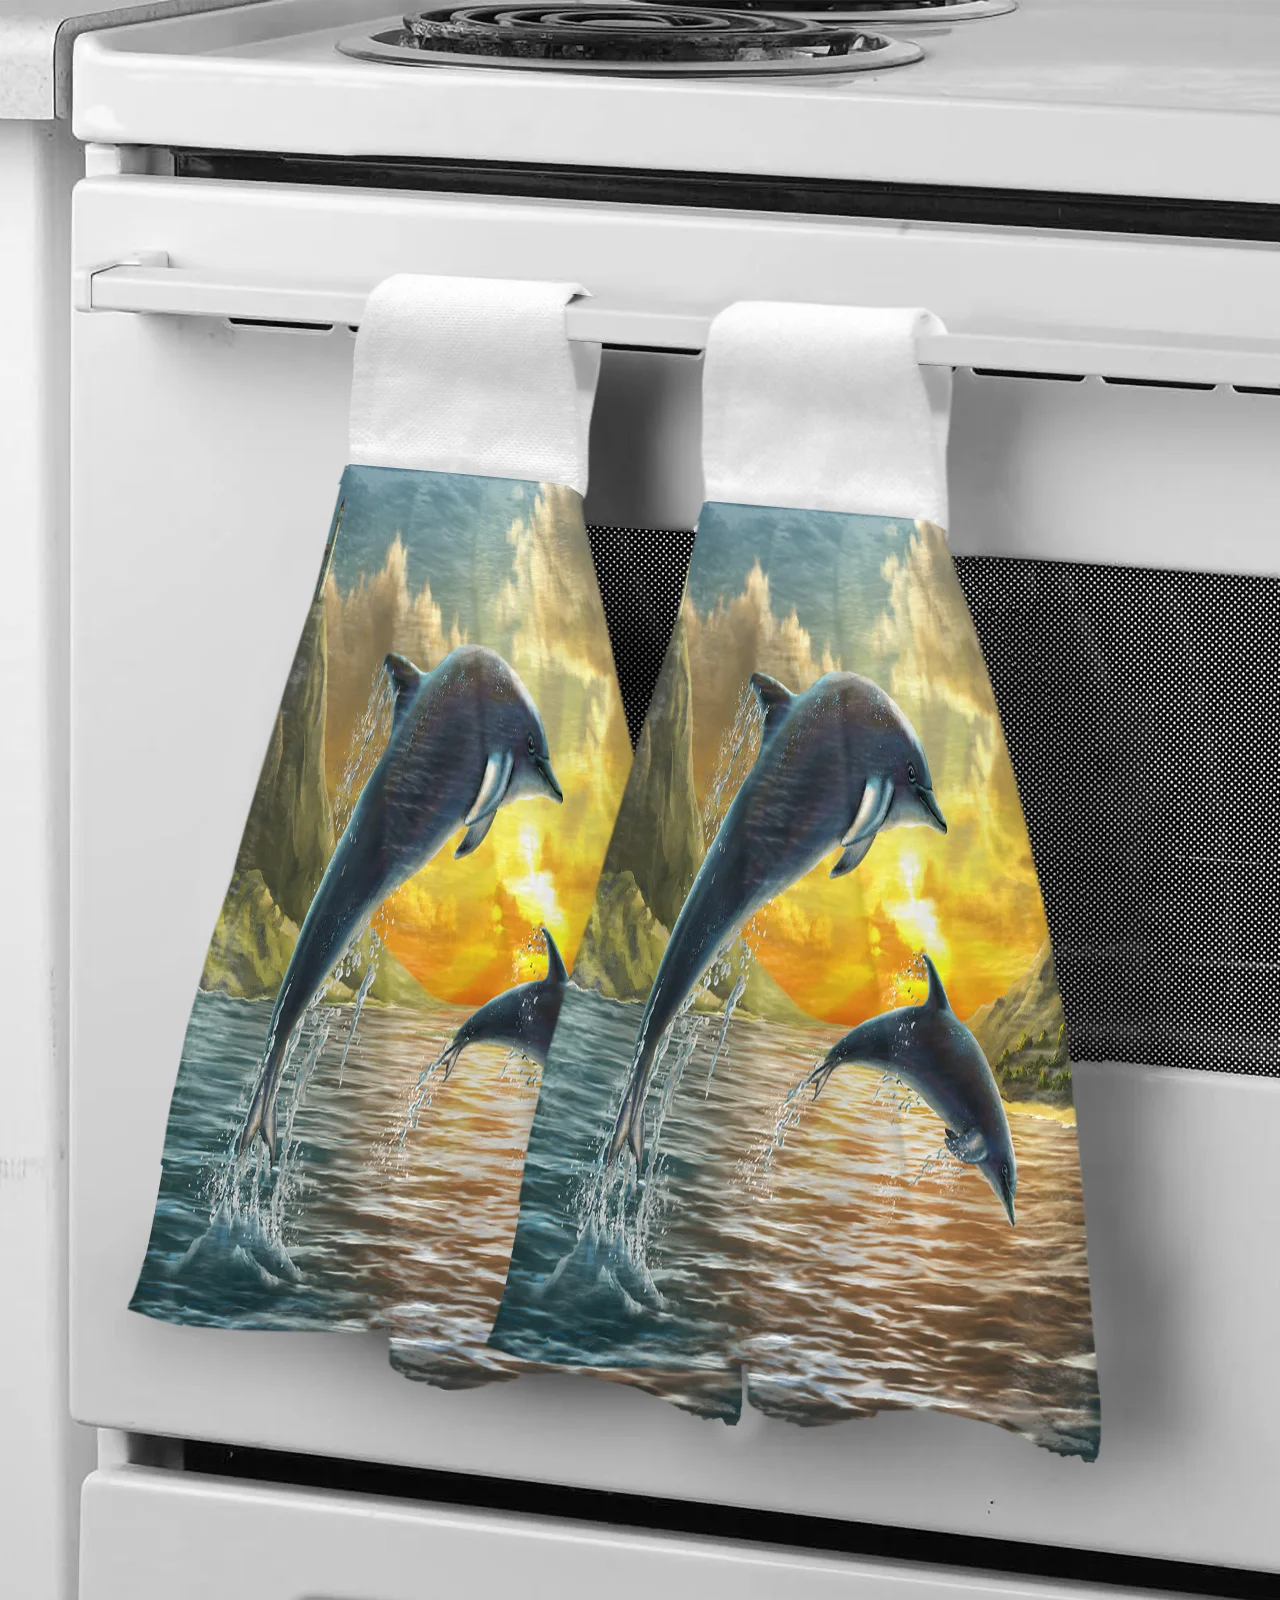 

Полотенце из микрофибры с изображением морских животных и дельфинов